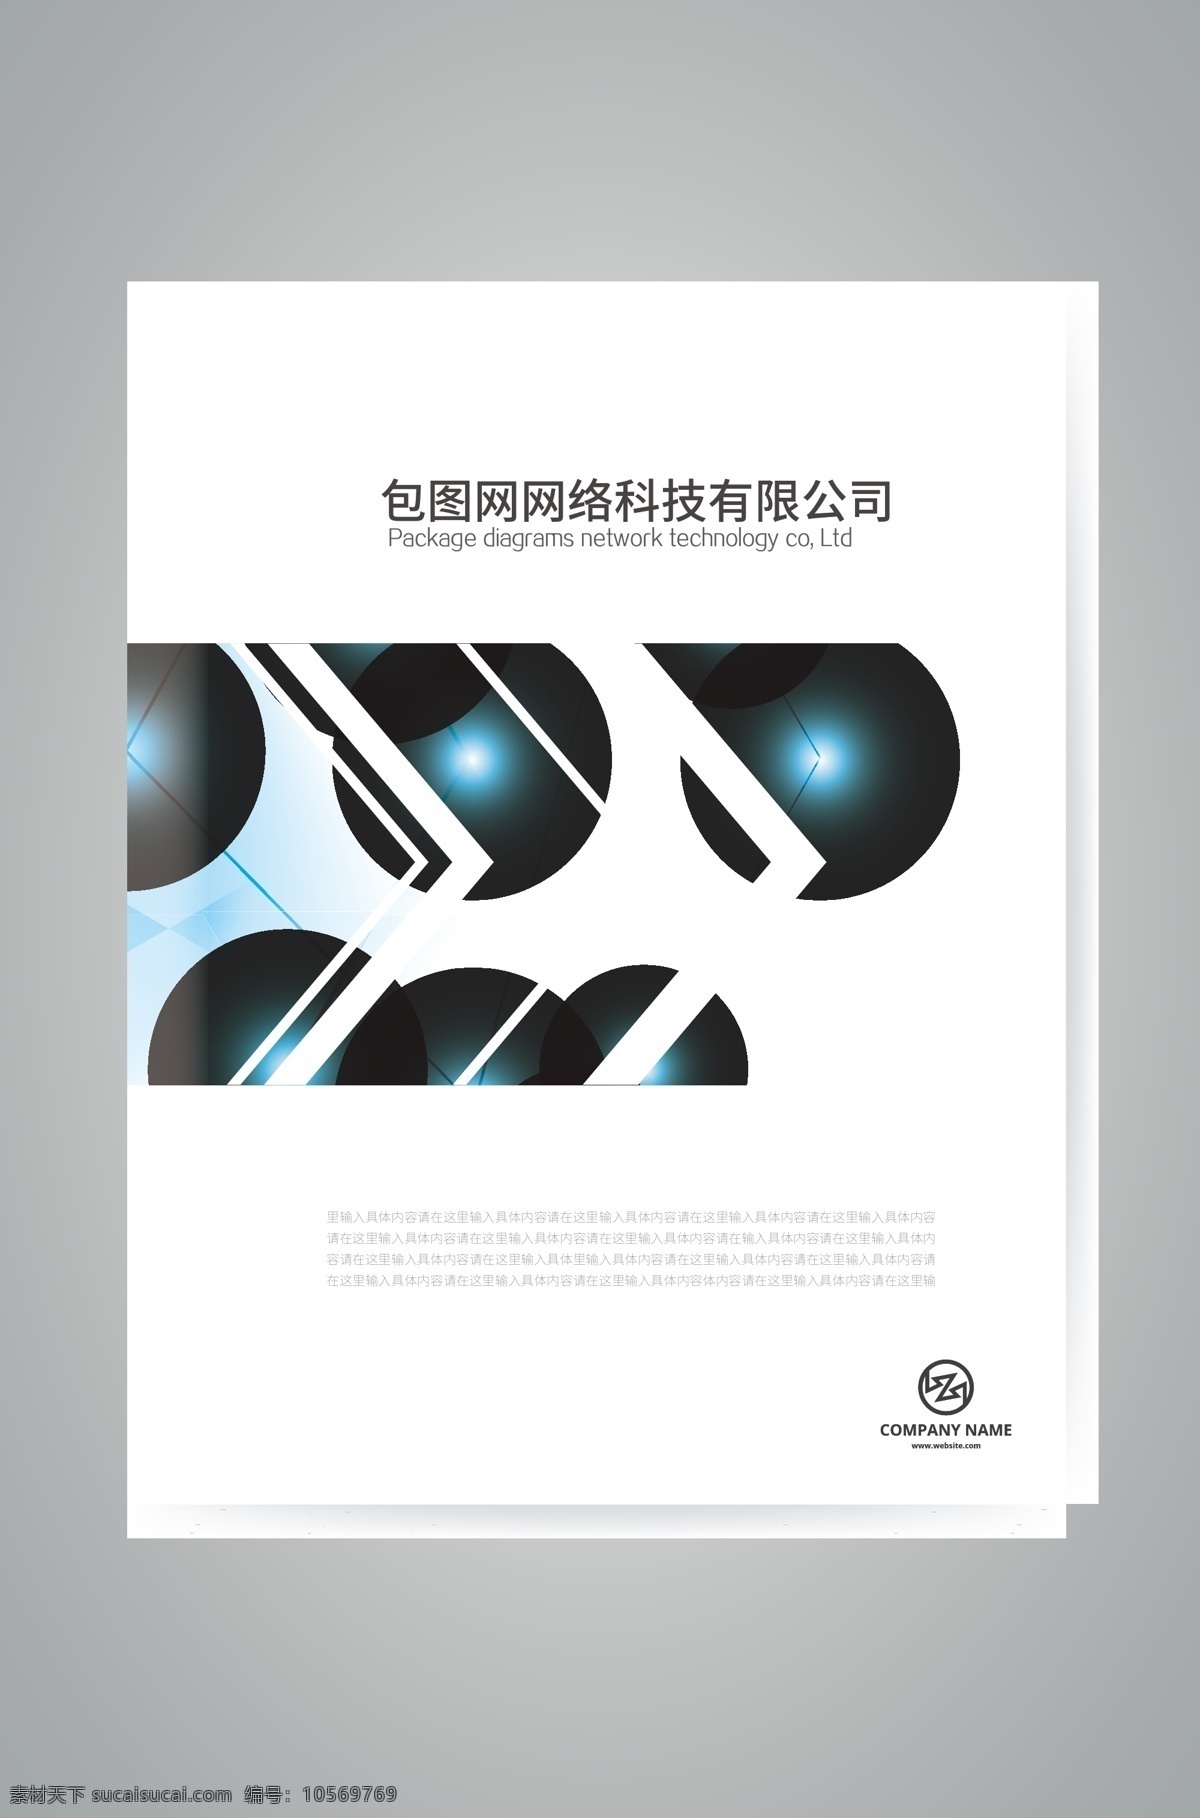 蓝色 大气 企业形象 画册设计 企业形象画册 蓝色大气画册